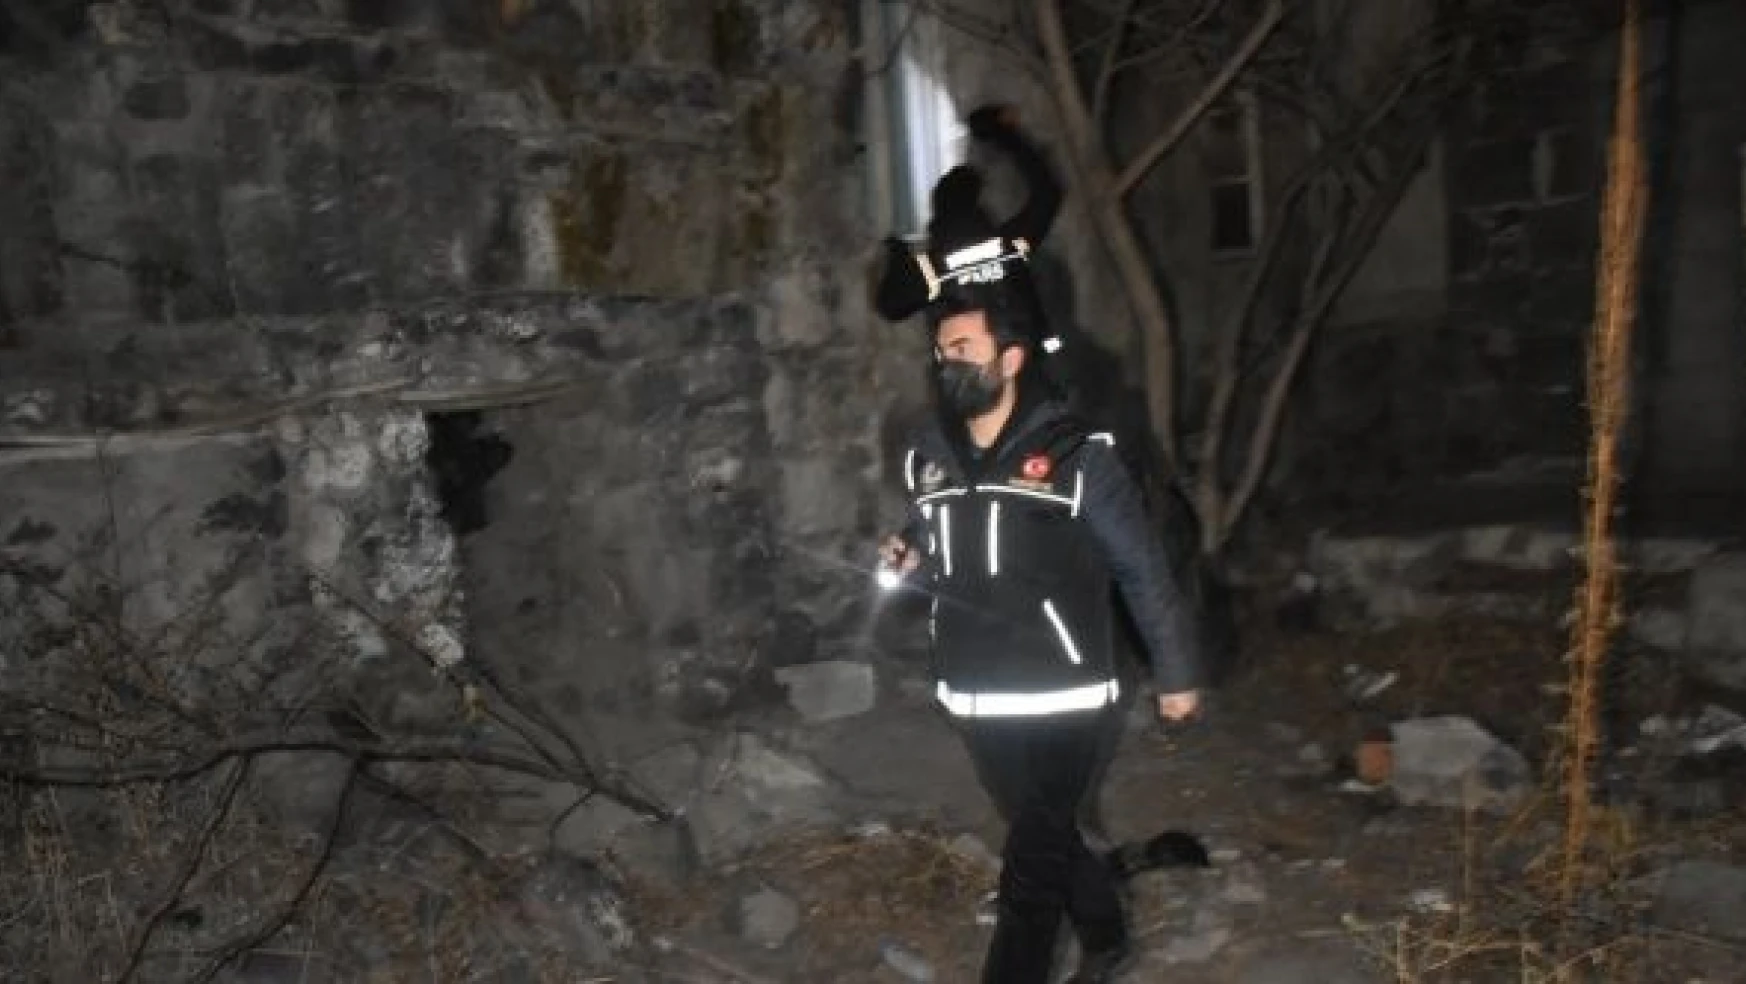 Kars'ta polis sıfırın altında 15 derecede uygulama yaptı